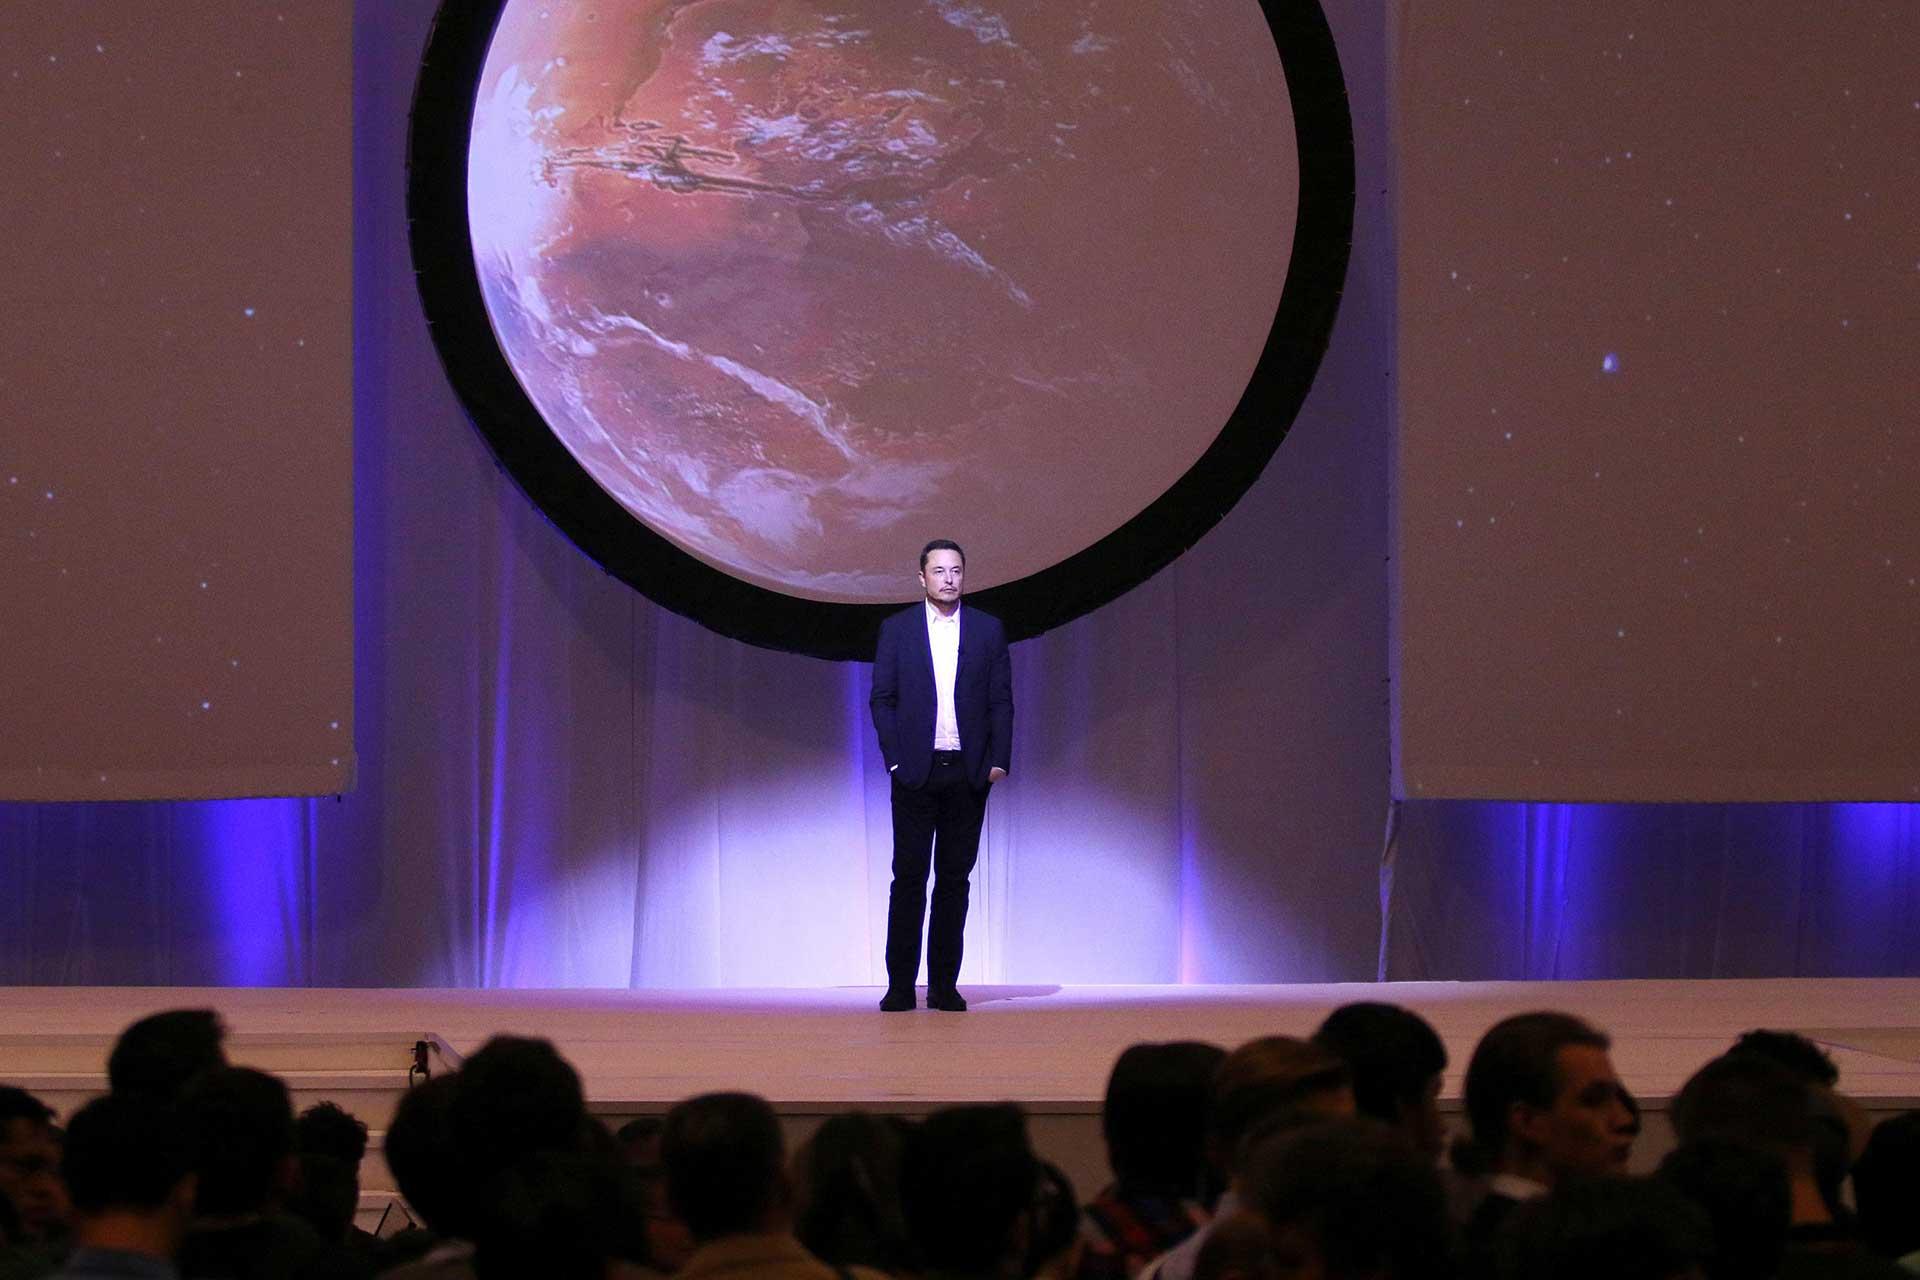 ایلان ماسک روبروی حضار روی استیج ایستاده و تصویر مریخ پشت سر او است